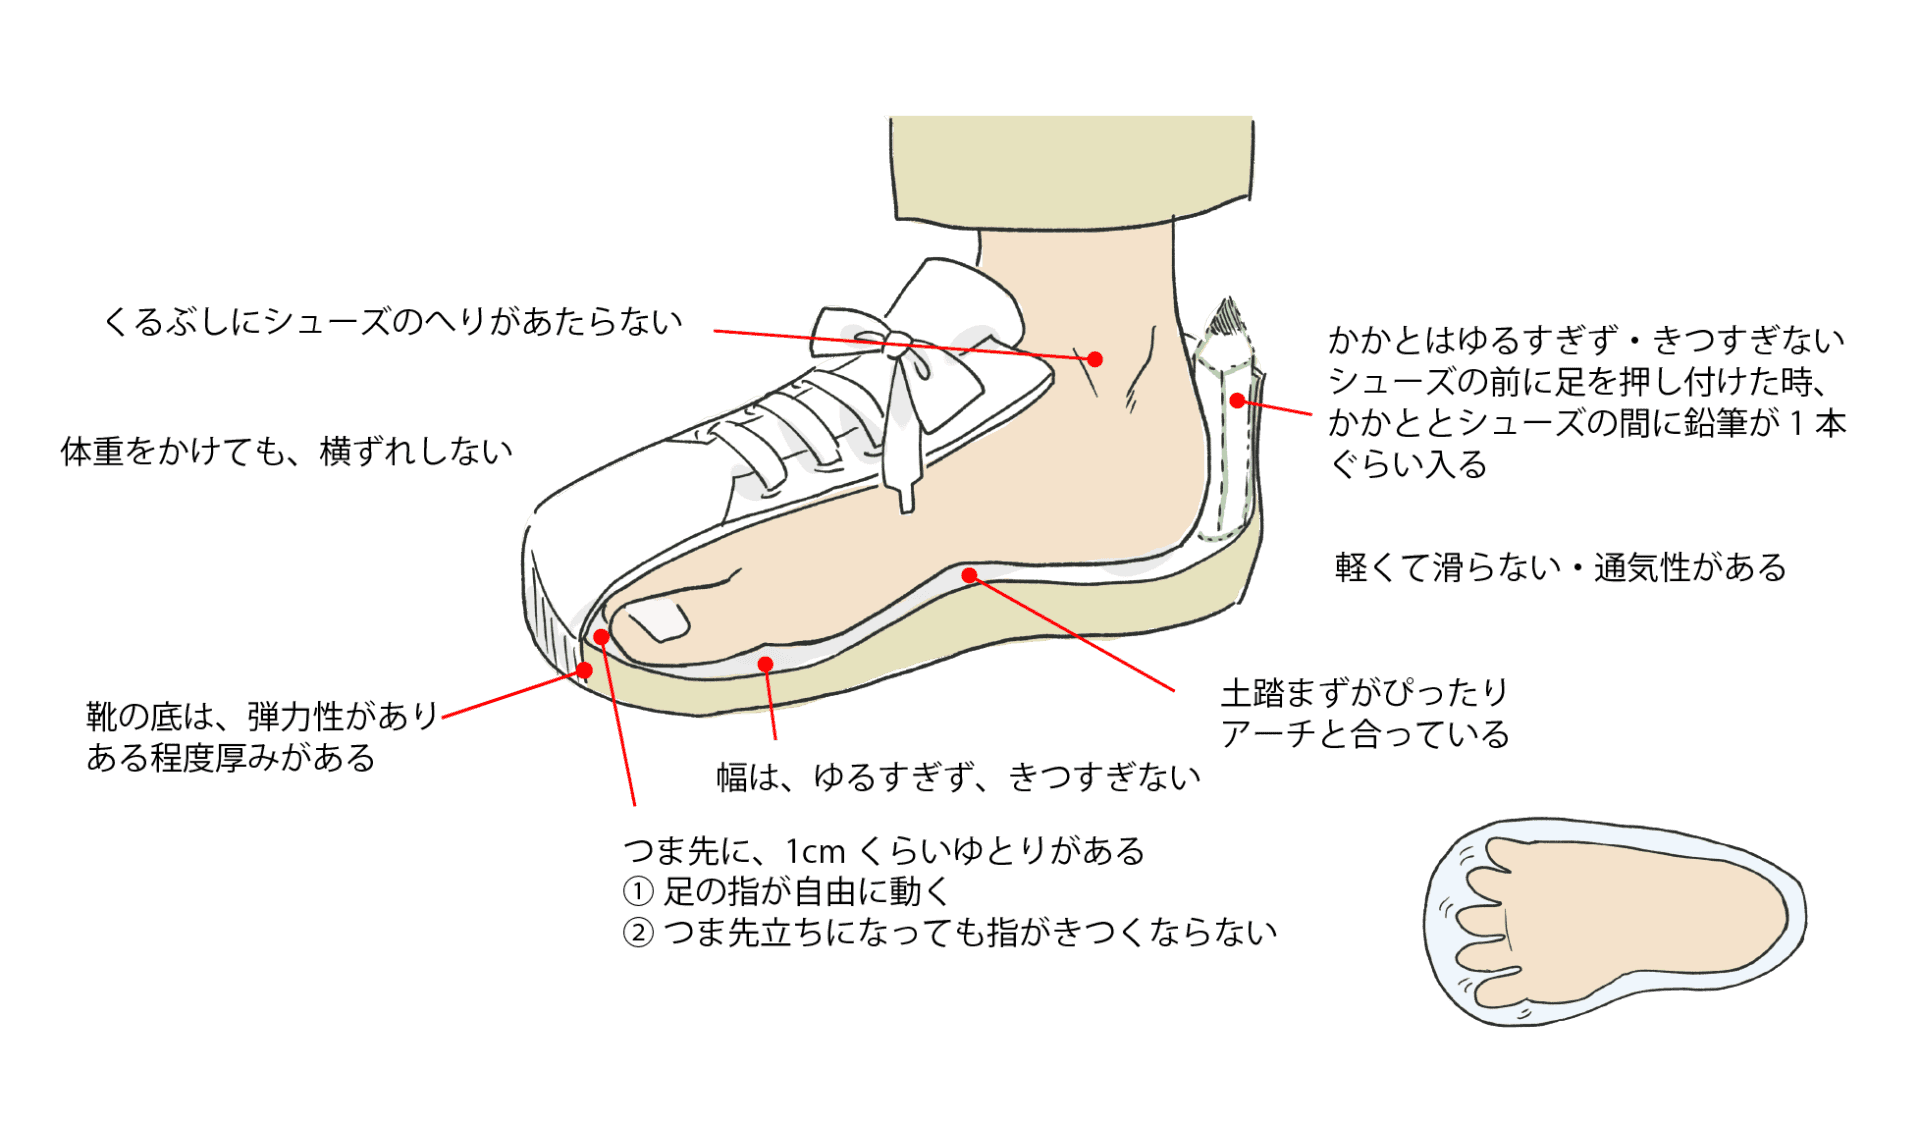 歩きやすい靴のポイント